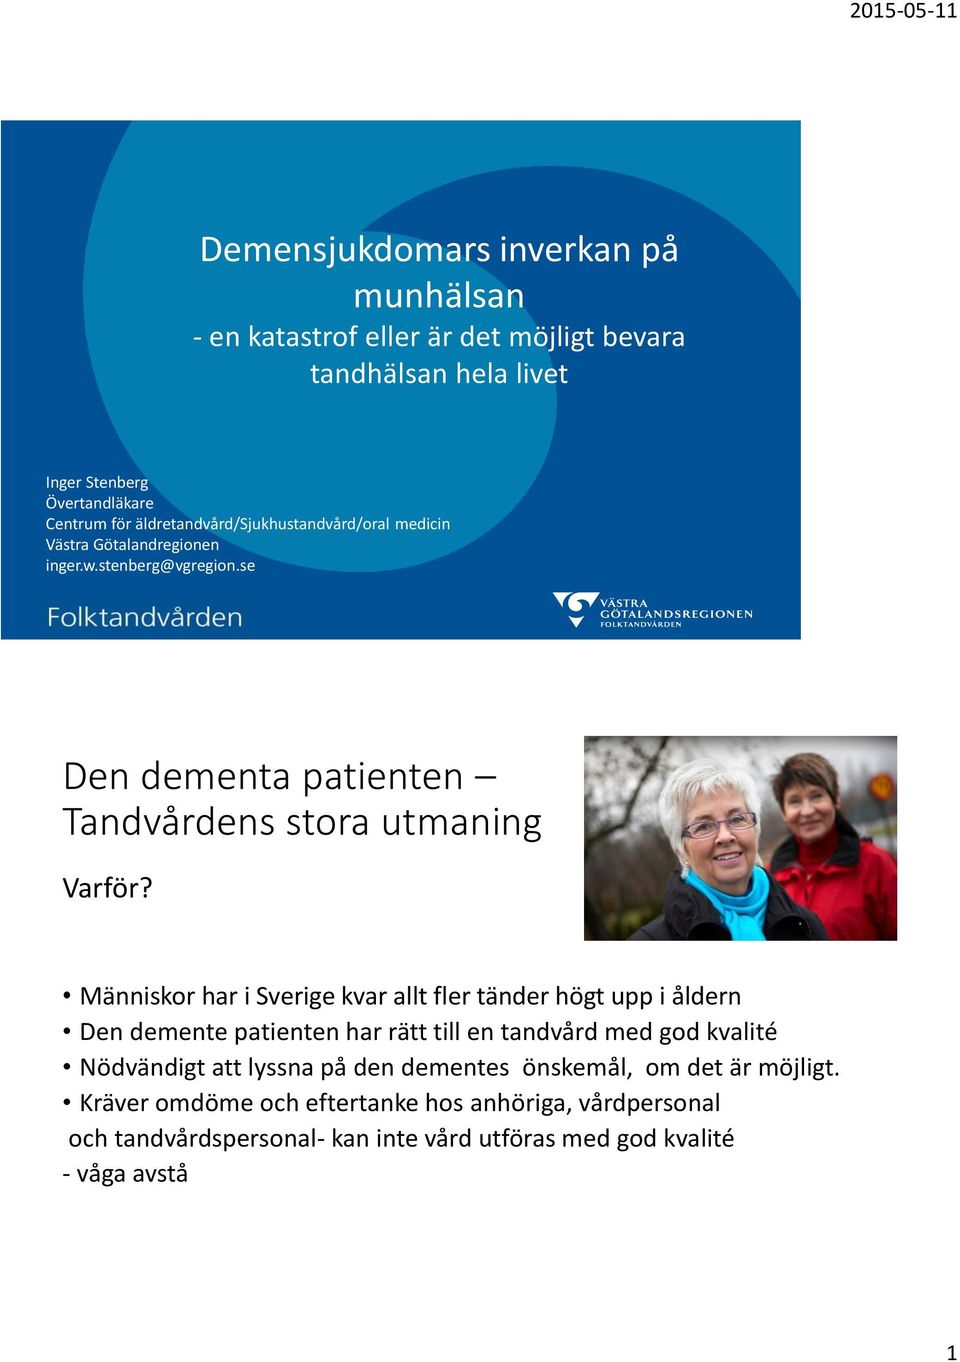 Människor har i Sverige kvar allt fler tänder högt upp i åldern Den demente patienten har rätt till en tandvård med god kvalité Nödvändigt att lyssna på